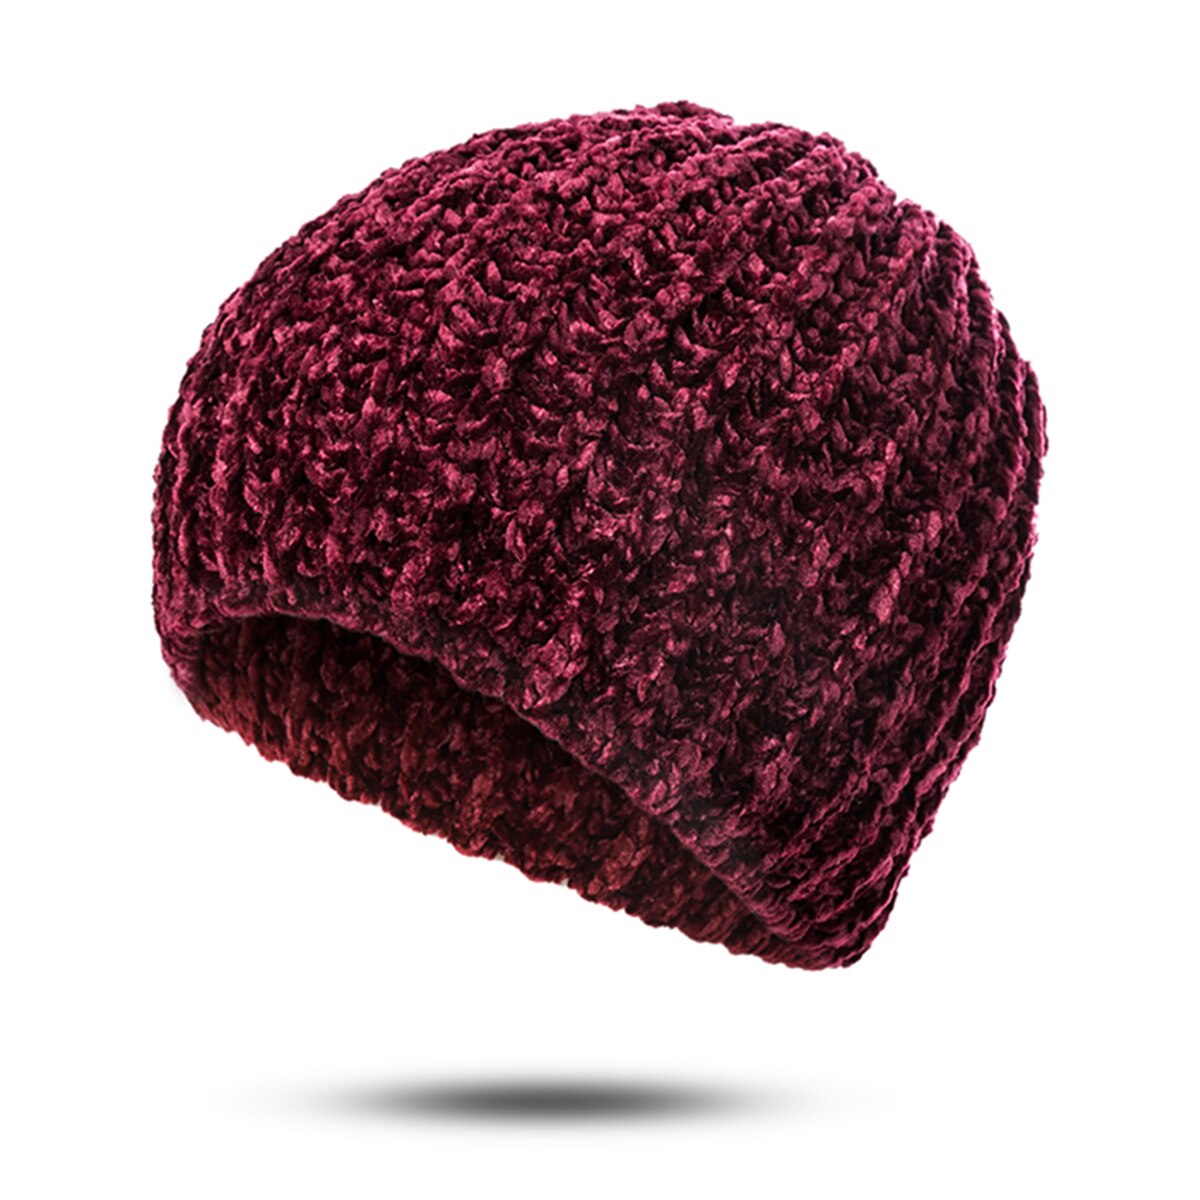 Mltbb vinter kvinder klassisk beanie hat vinter blød varm hatte til damer hækning hat ski cap chenille kranhætte kvindelig motorhjelm: Rød